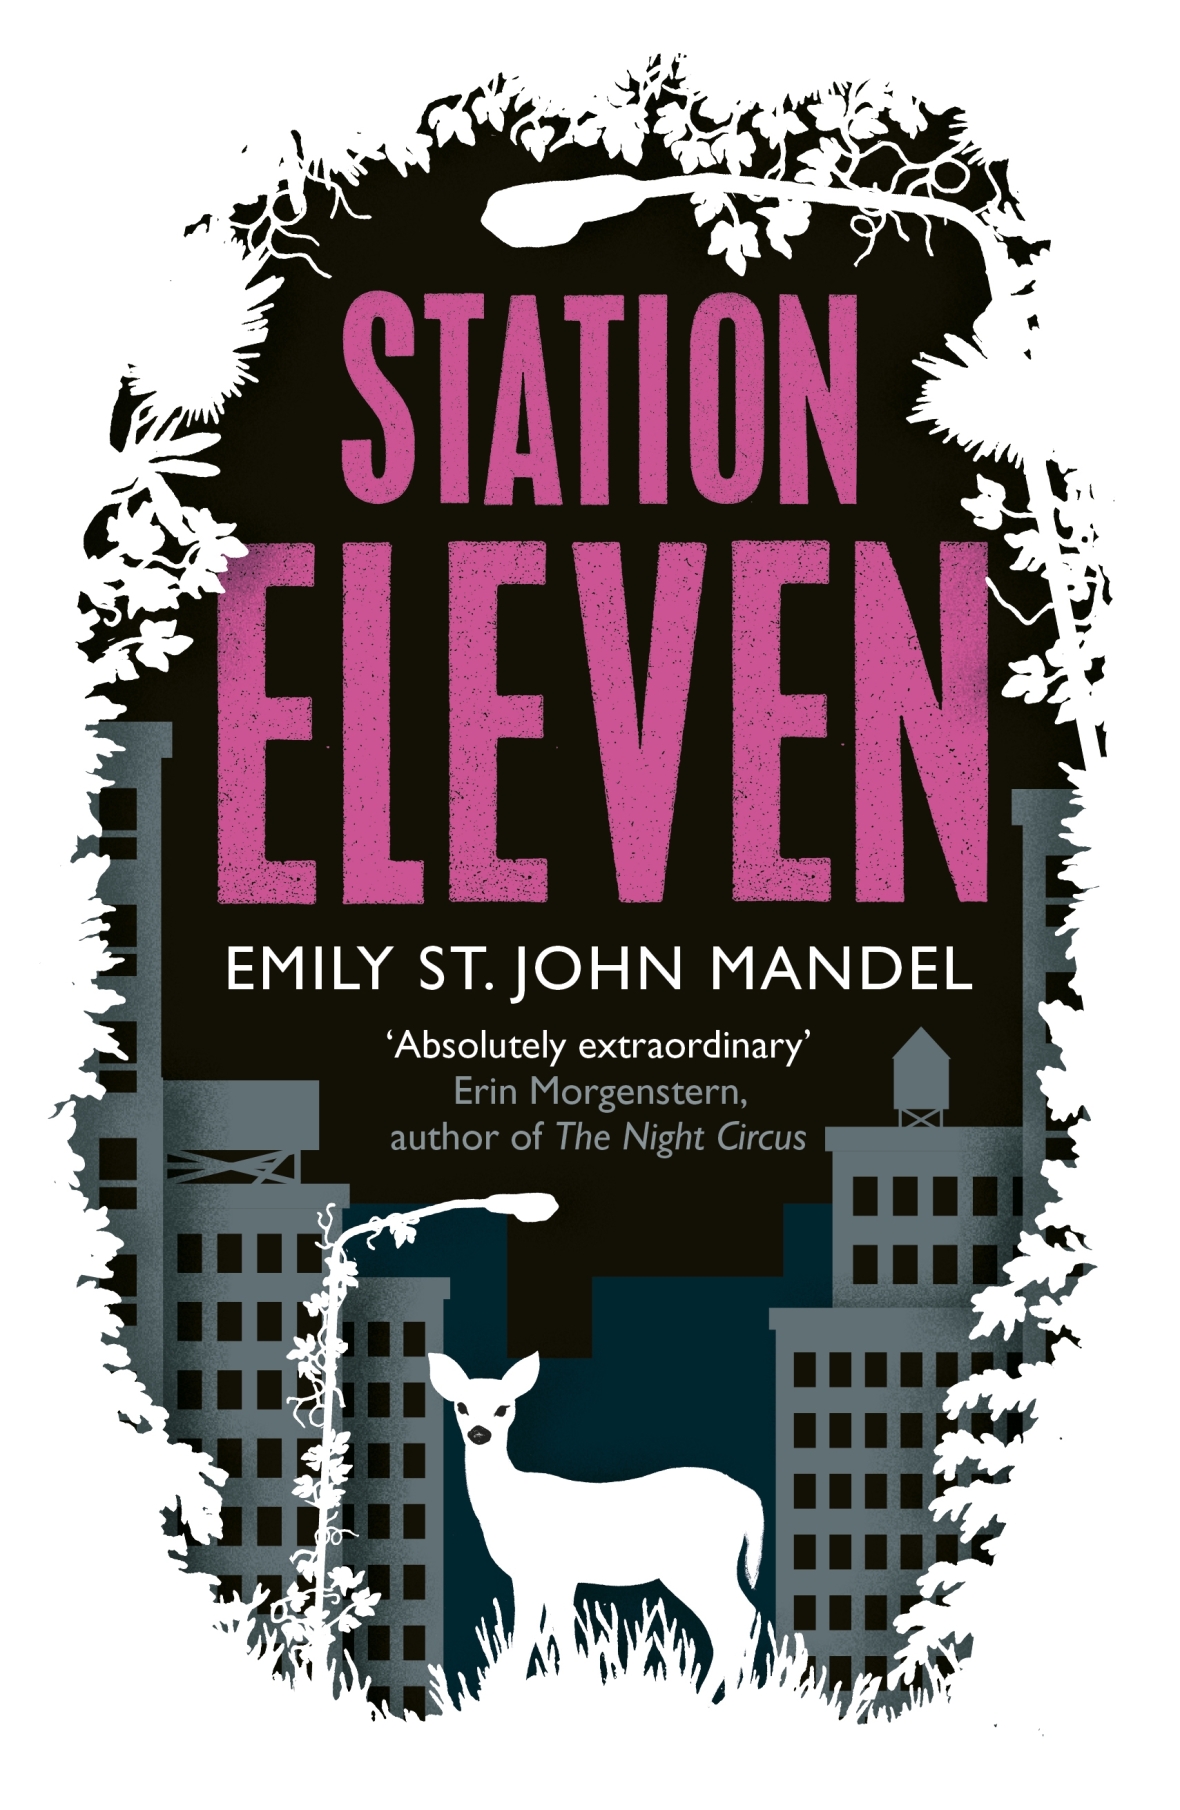 station-eleven